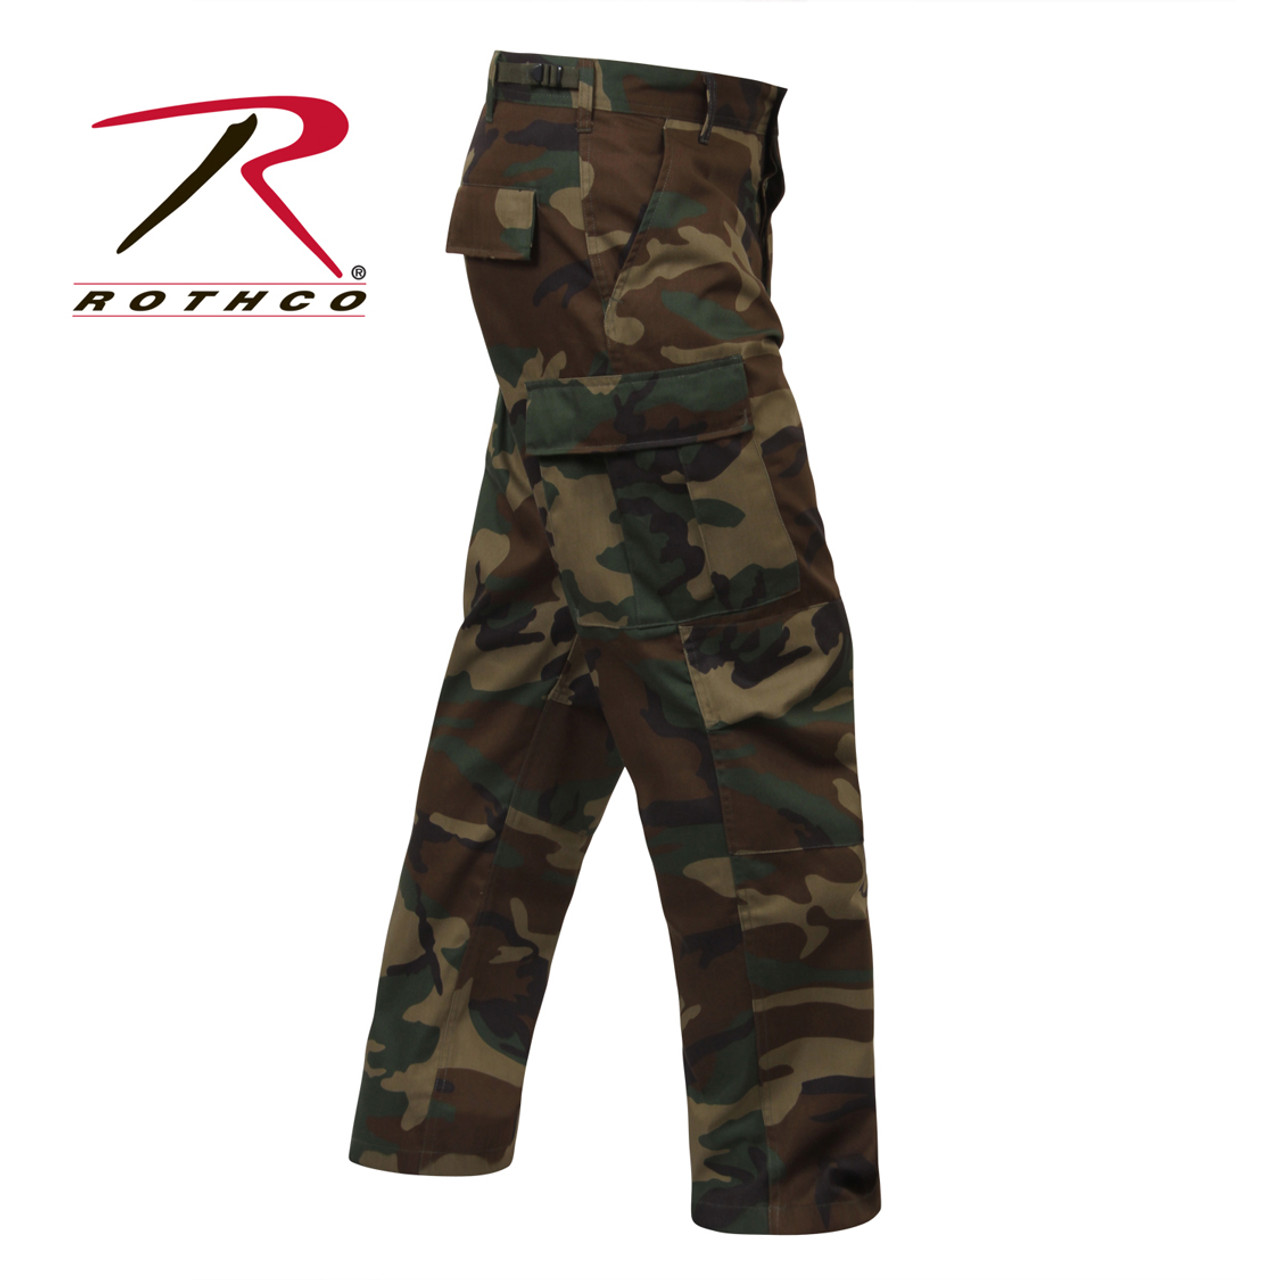 Shop Woodland Camo BDU Fatigue Pants - Fatigues Army Navy Surplus Gear